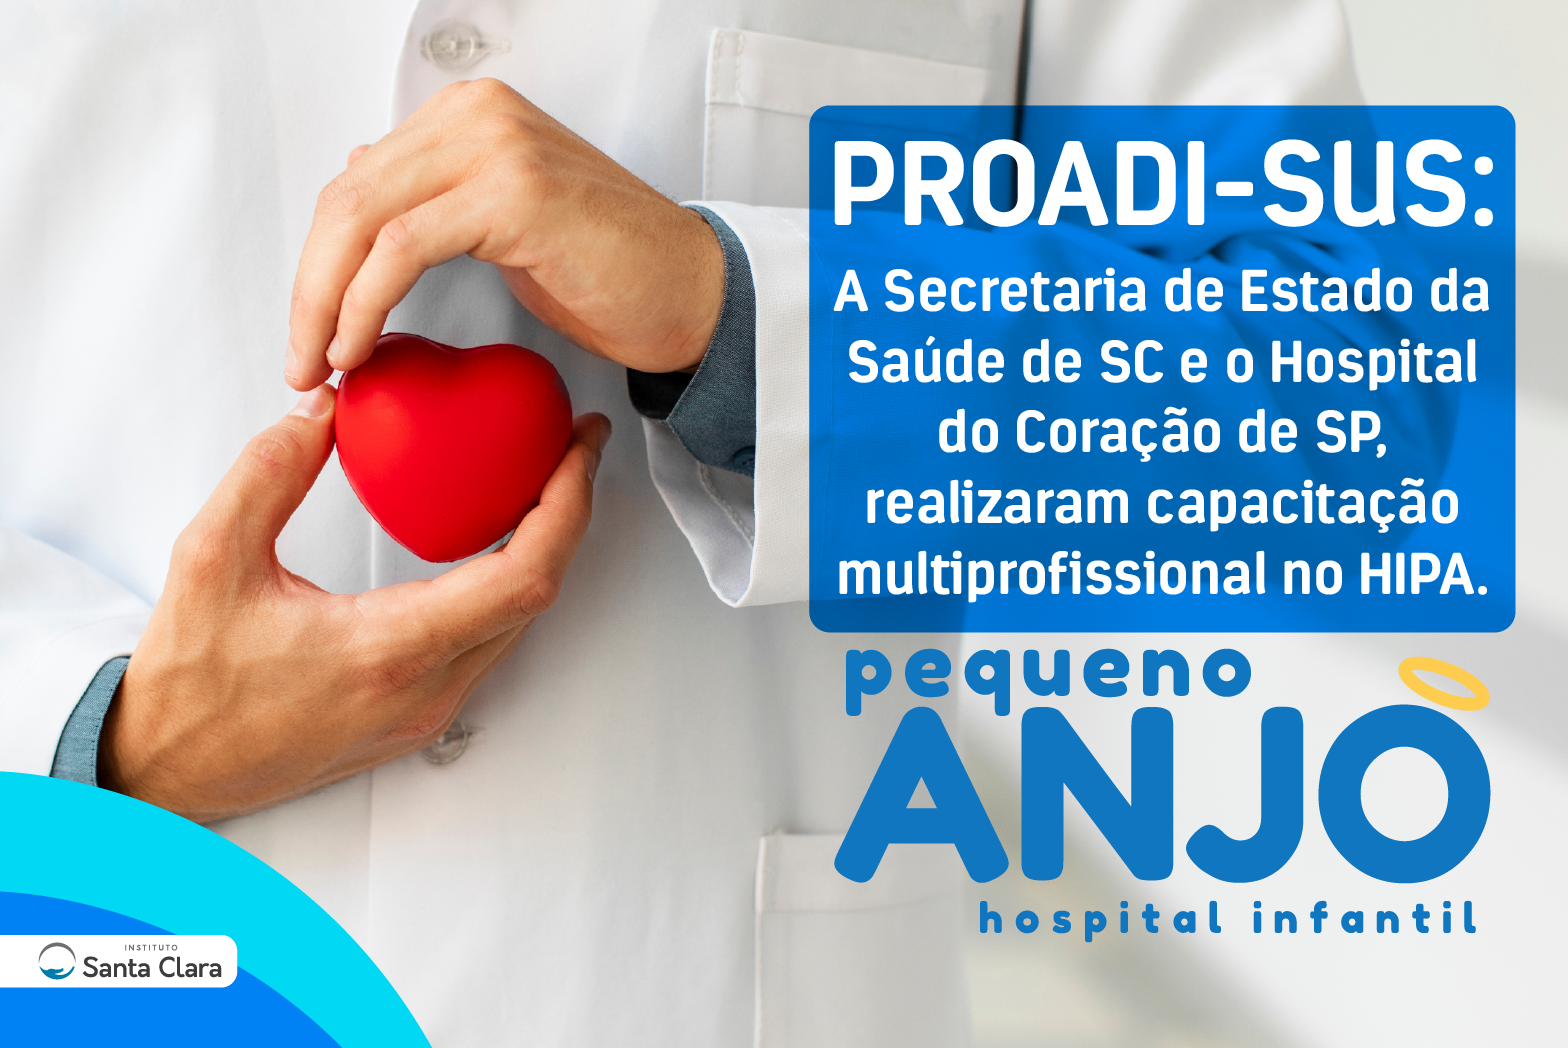 PROADI-SUS A Secretaria de Estado da Saúde de SC e o Hospital do Coração de SP, realizaram capacitação multiprofissional no HIPA.